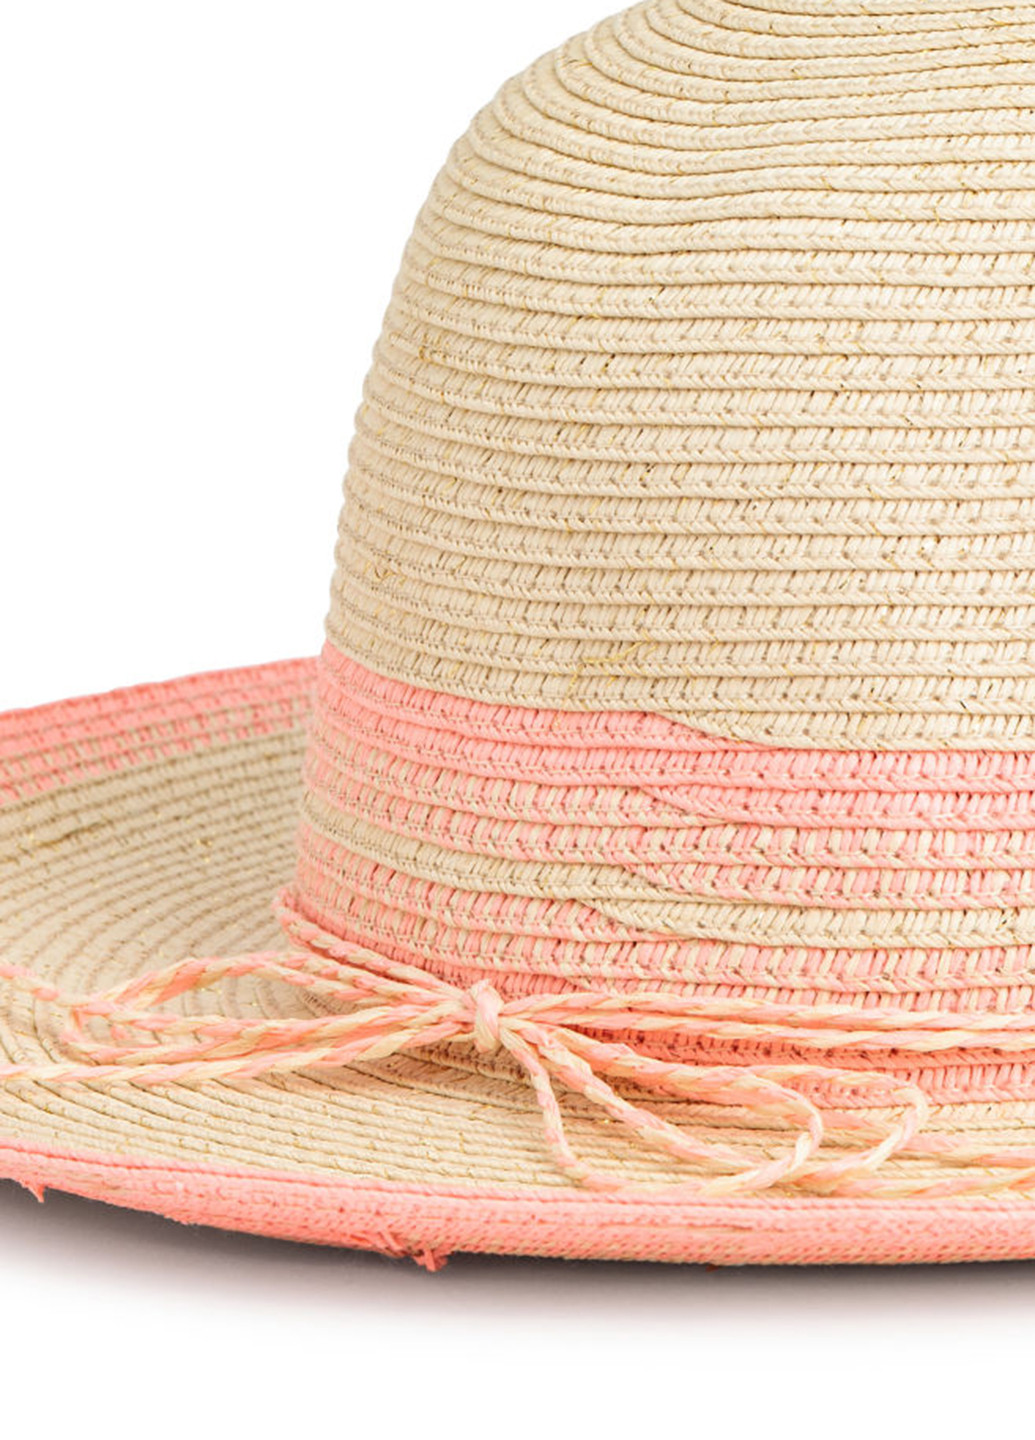 Шляпа H&M однотонная бежевая пляжная